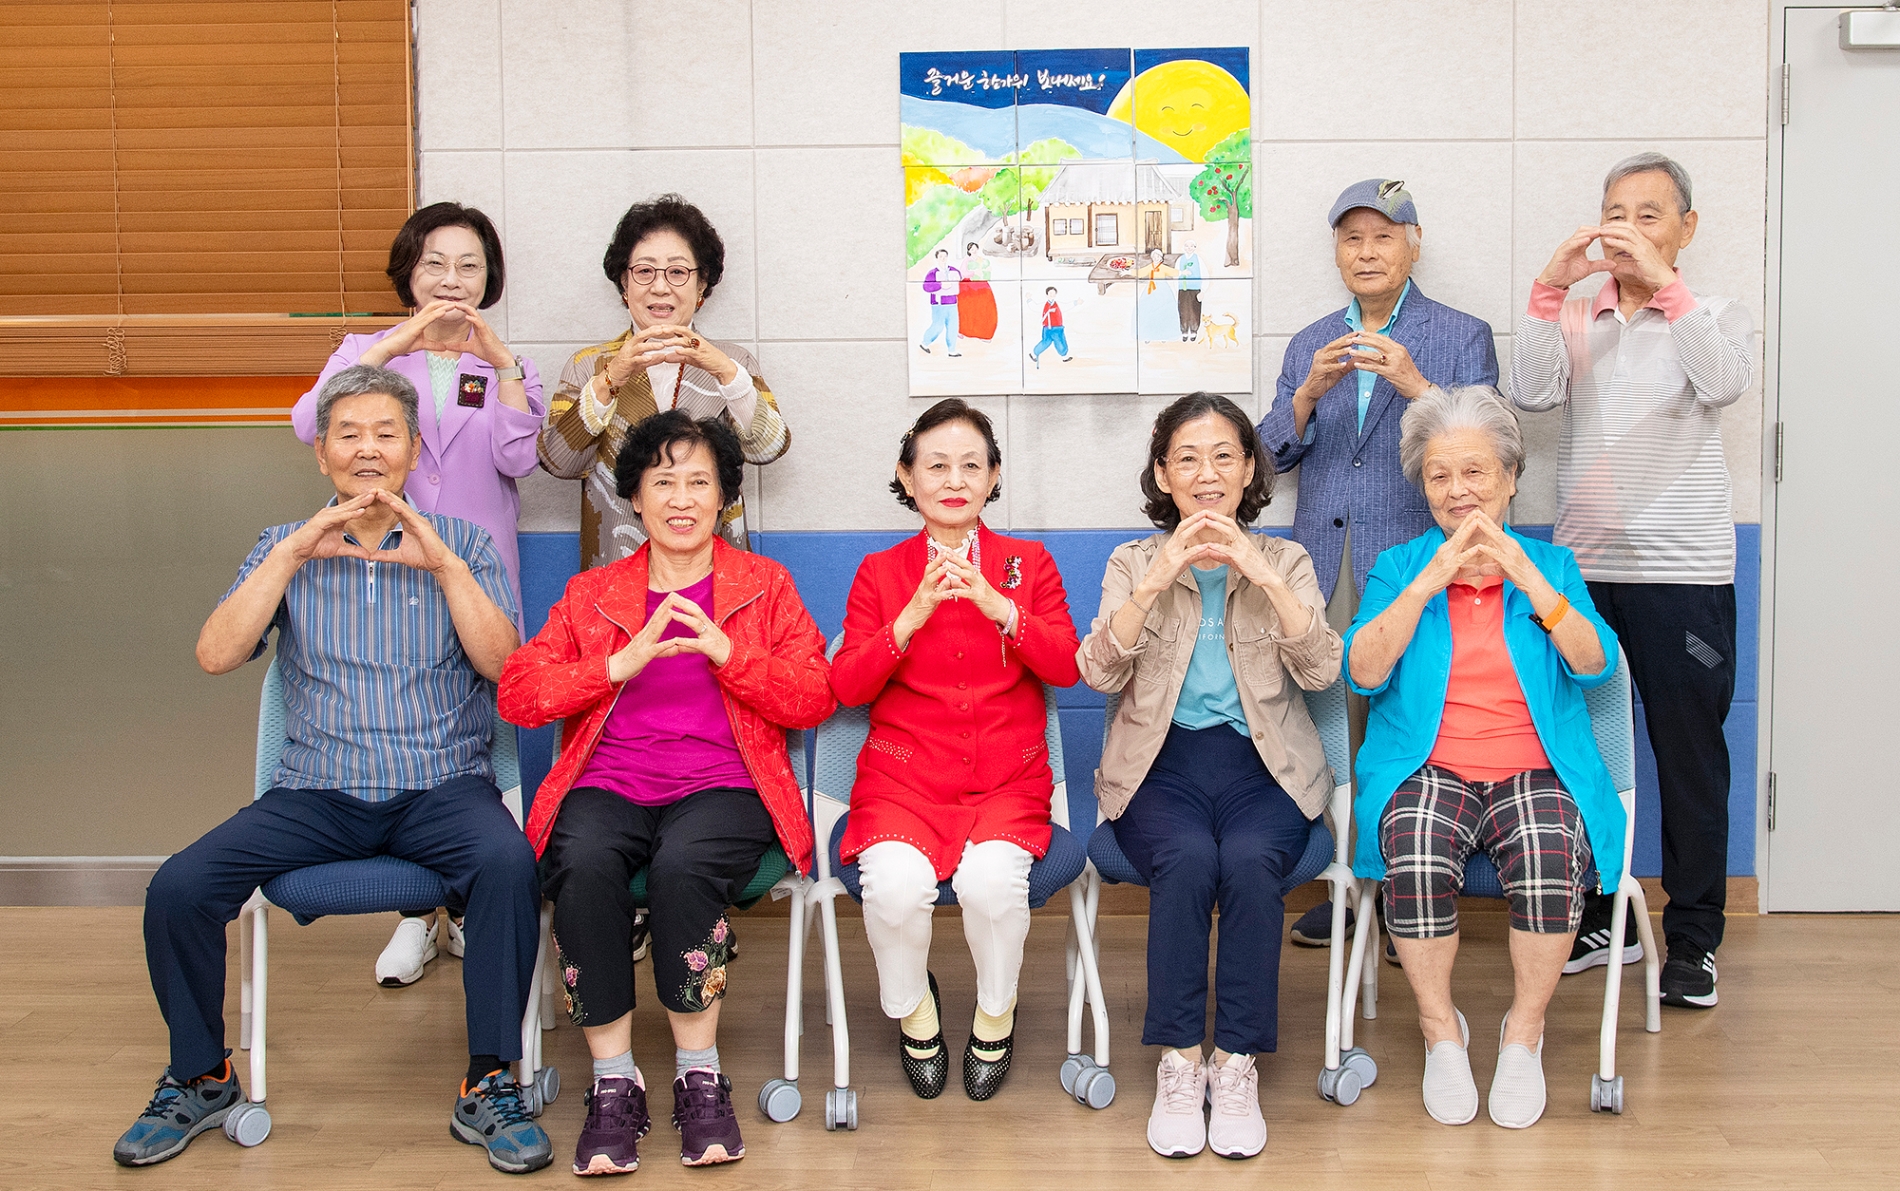 박희영 용산구청장(뒷줄 왼쪽)이 지난 21일 구 치매안심센터에서 진행된 프로그램에 참여해 어르신과 기념촬영을 하는 모습./사진제공=용산구